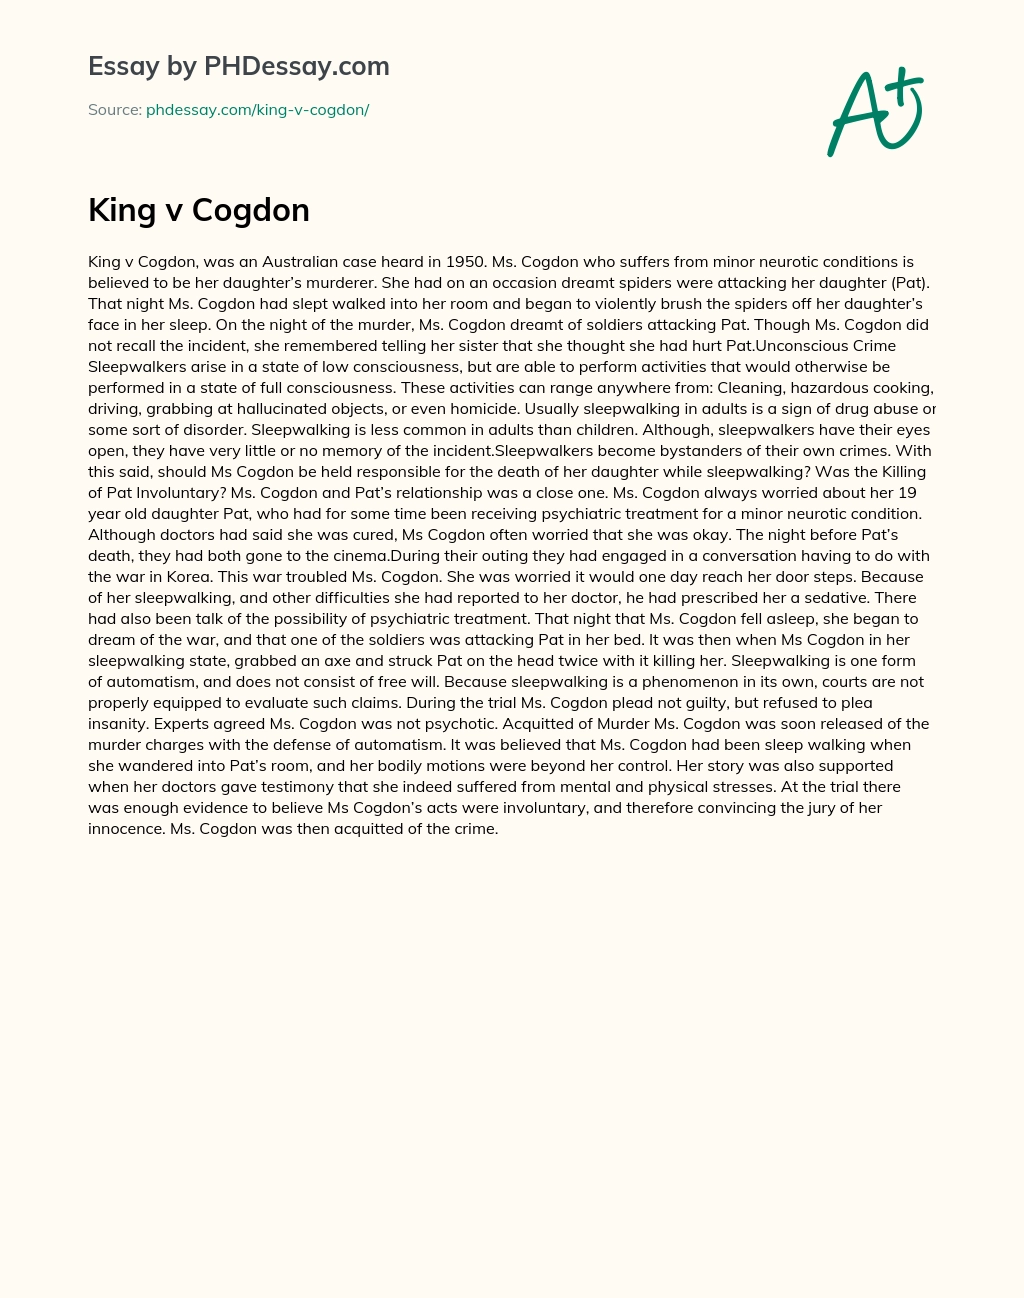 King v Cogdon essay